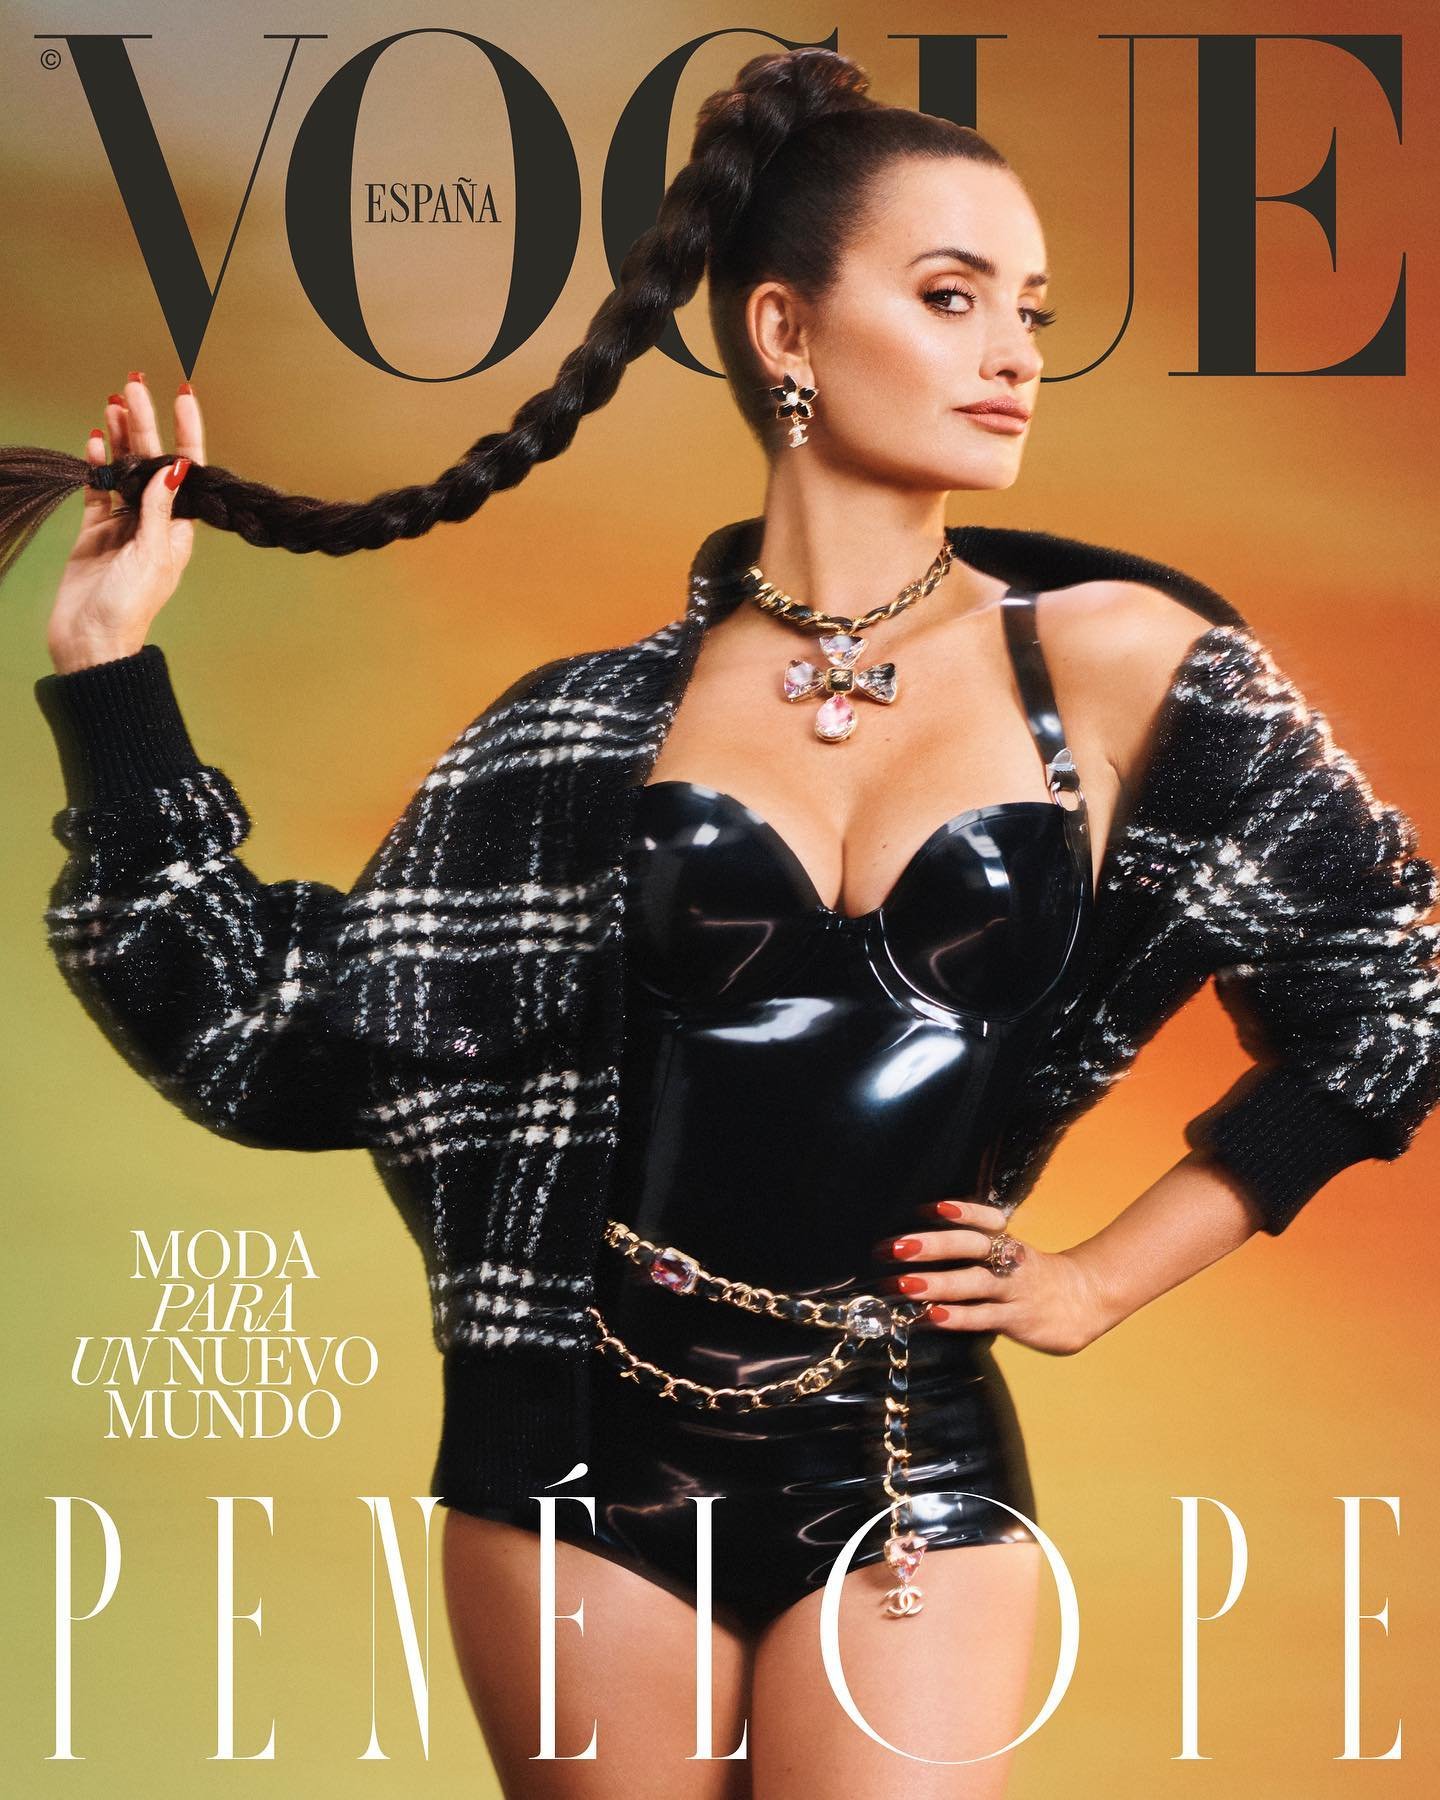 Penelope-Cruz-by-Ned-Rogers-Vogue-Spain-Sept-2022-00001.jpg